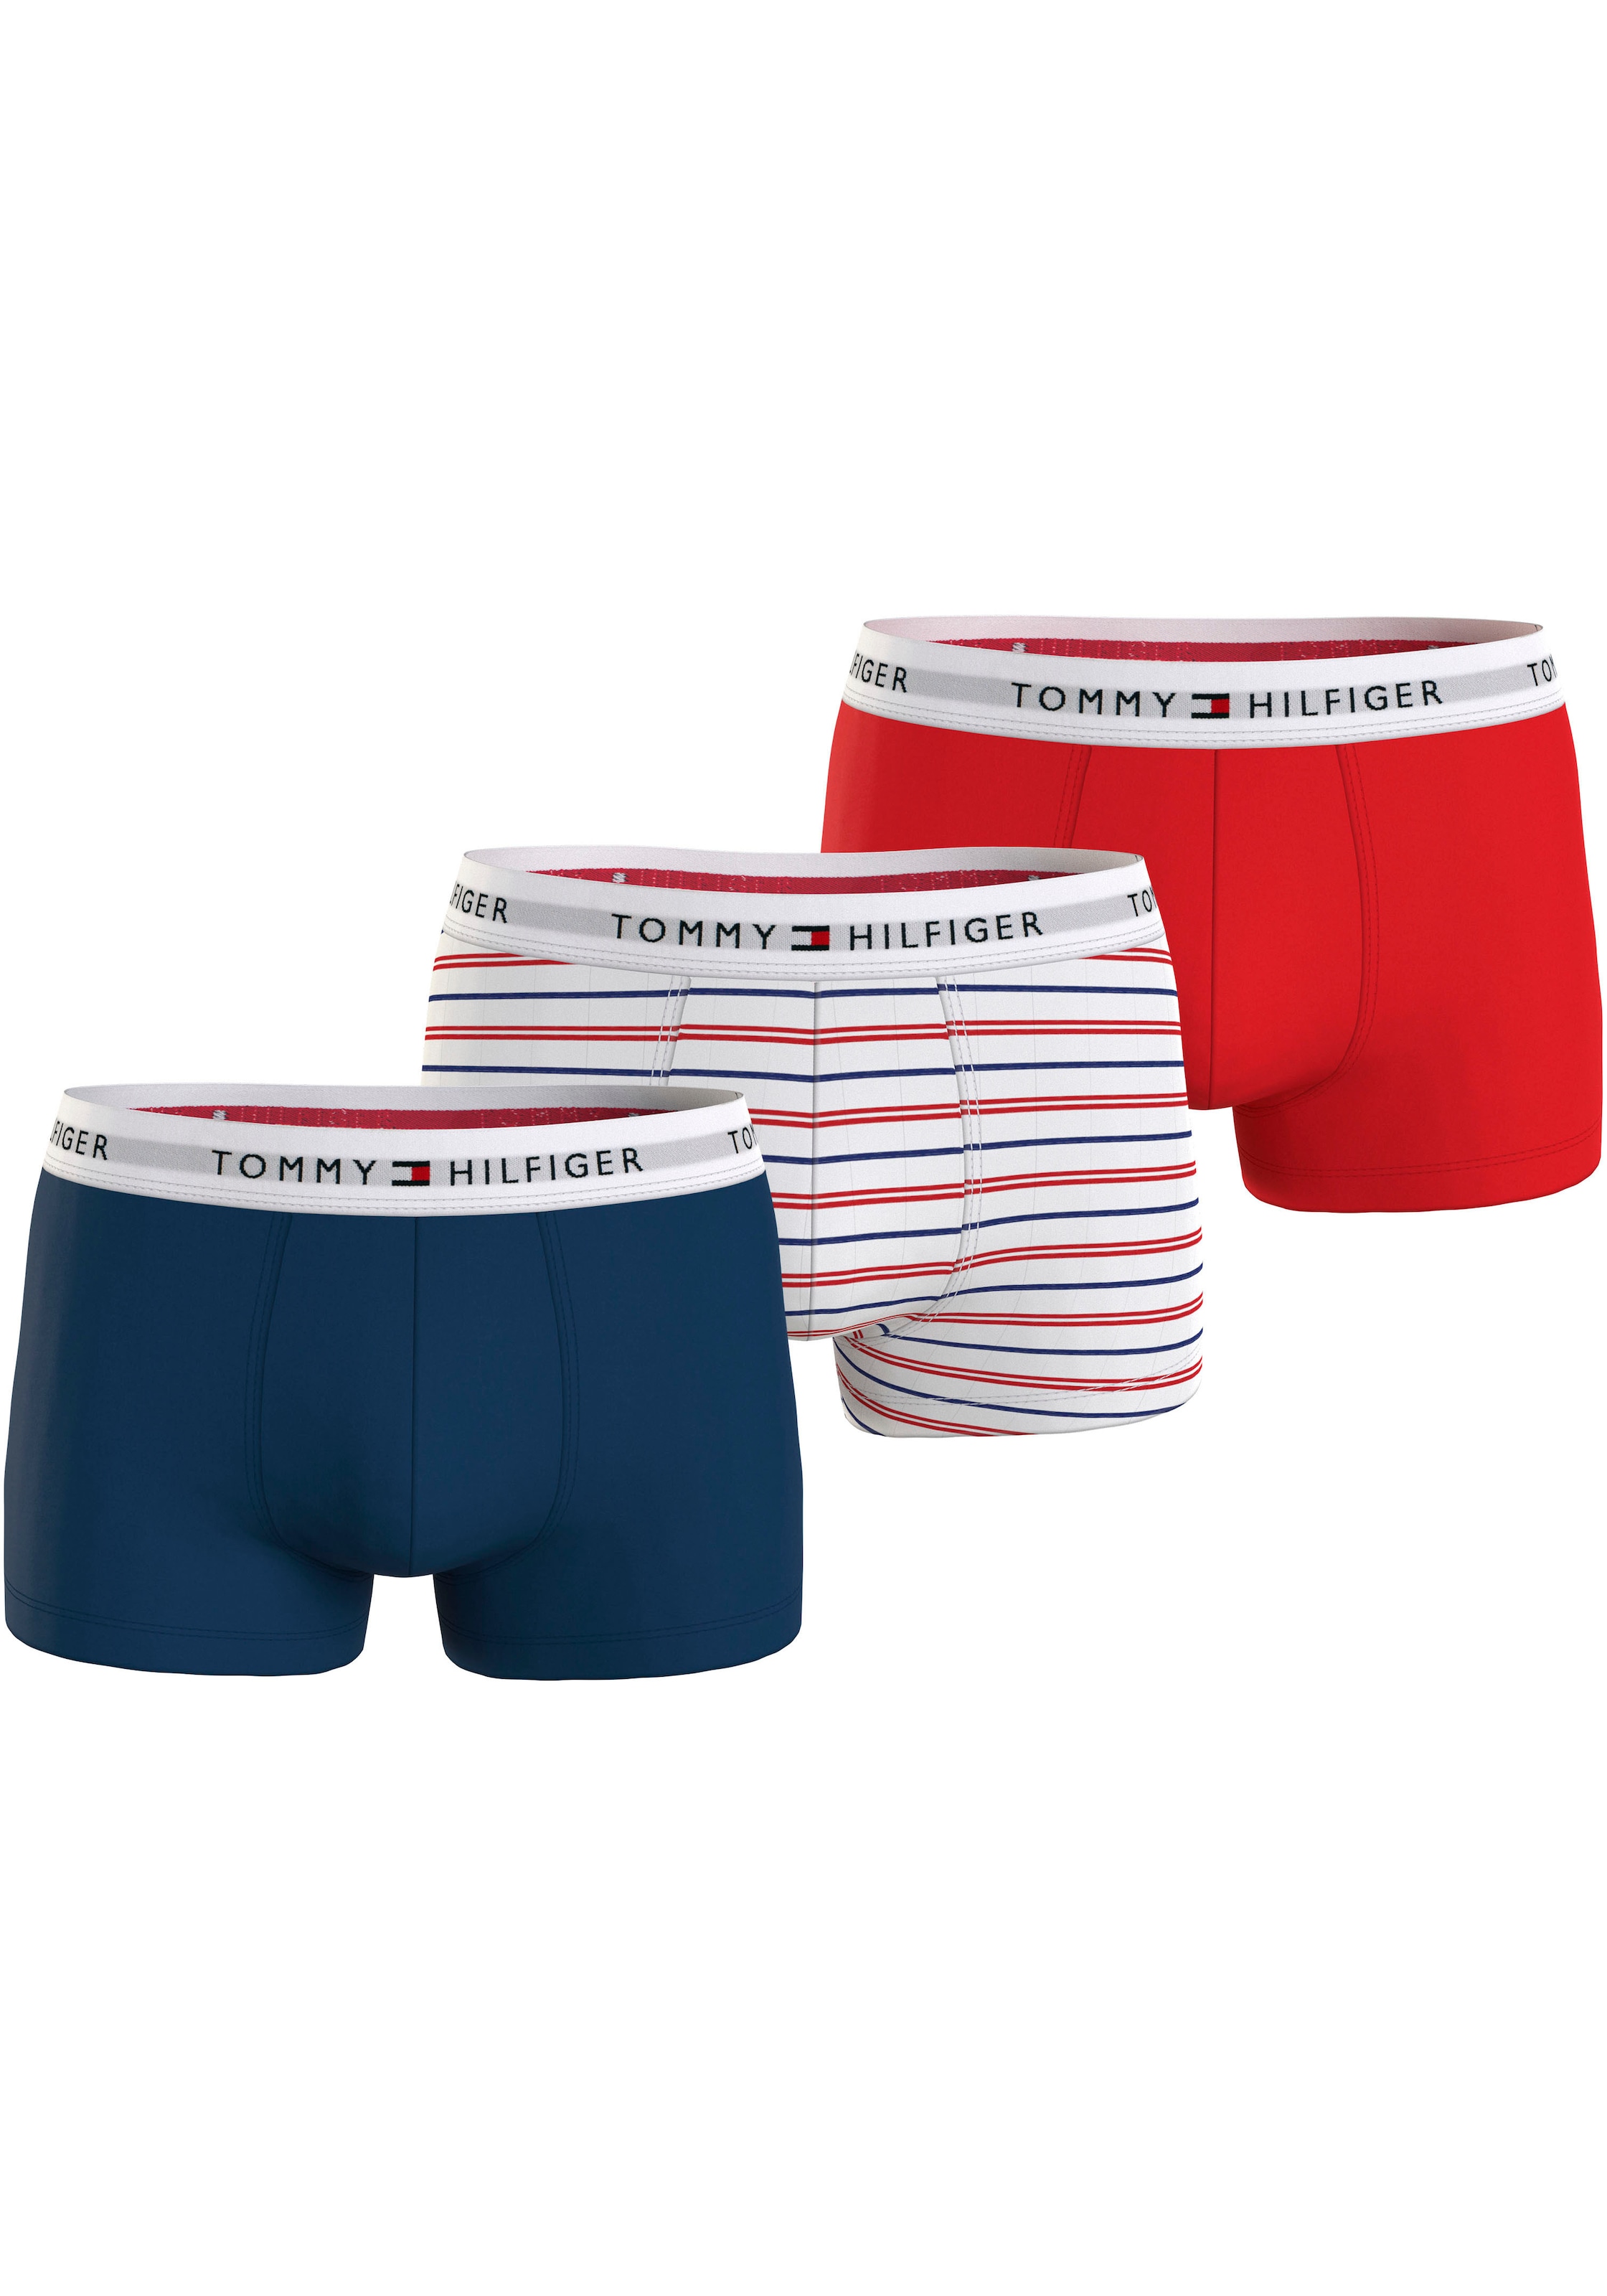 Tommy Hilfiger Underwear | BAUR kaufen online